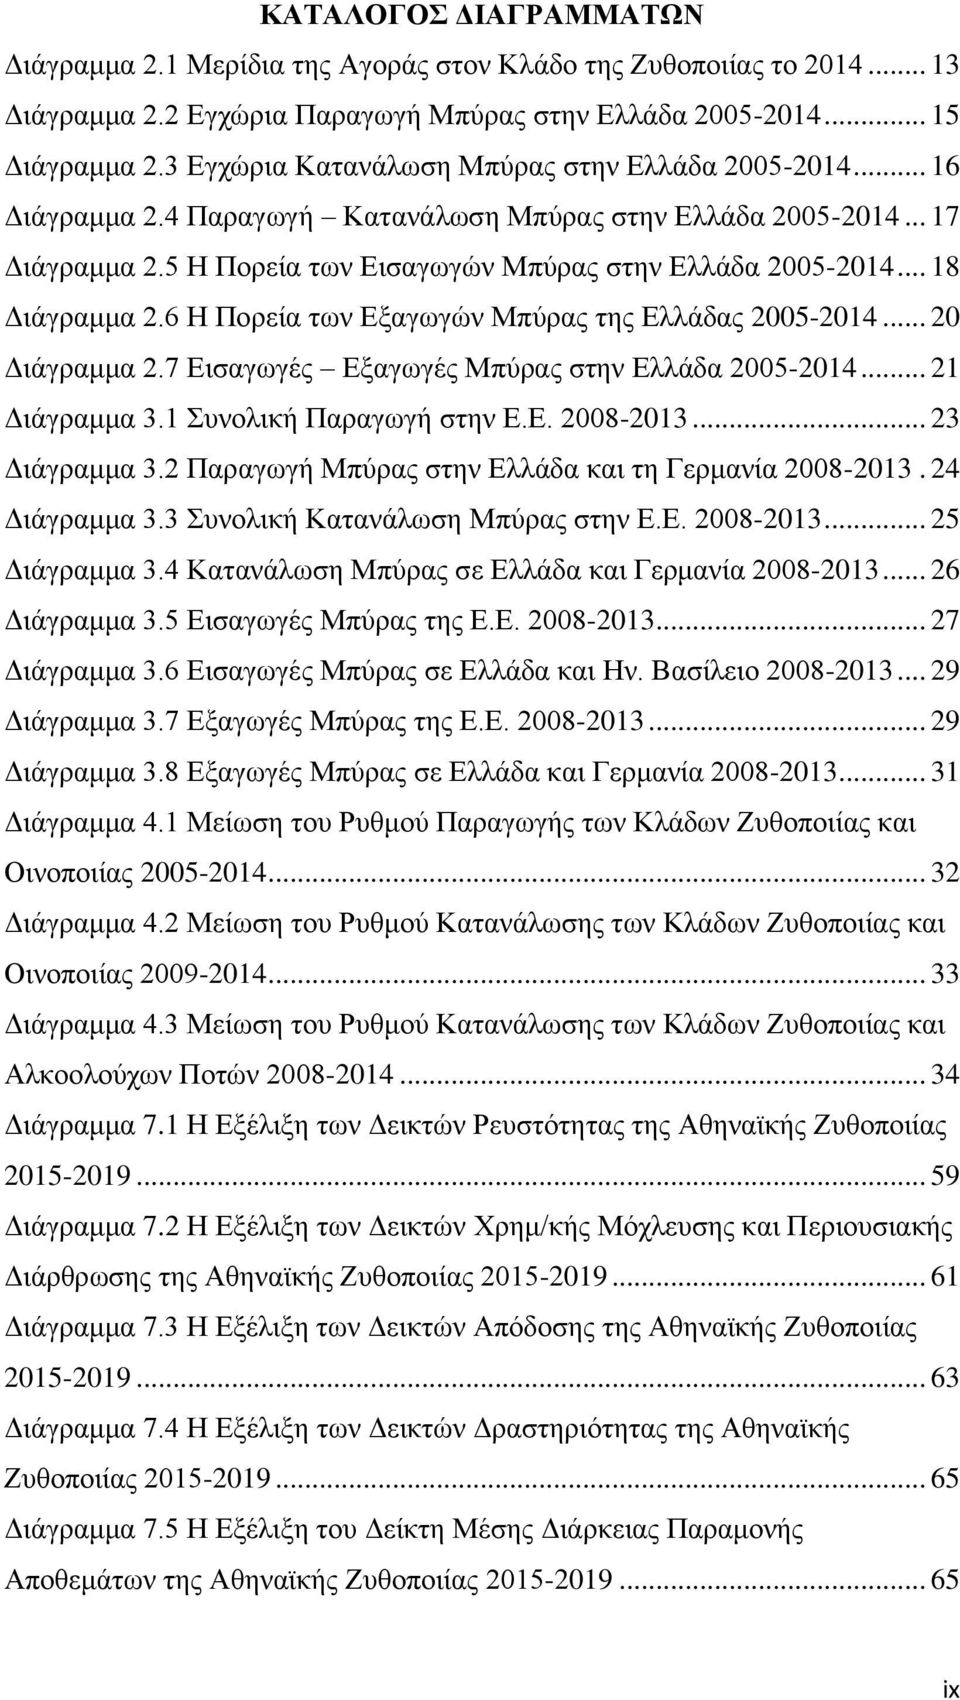 .. 18 Διάγραμμα 2.6 Η Πορεία των Εξαγωγών Μπύρας της Ελλάδας 2005-2014... 20 Διάγραμμα 2.7 Εισαγωγές Εξαγωγές Μπύρας στην Ελλάδα 2005-2014... 21 Διάγραμμα 3.1 Συνολική Παραγωγή στην Ε.Ε. 2008-2013.